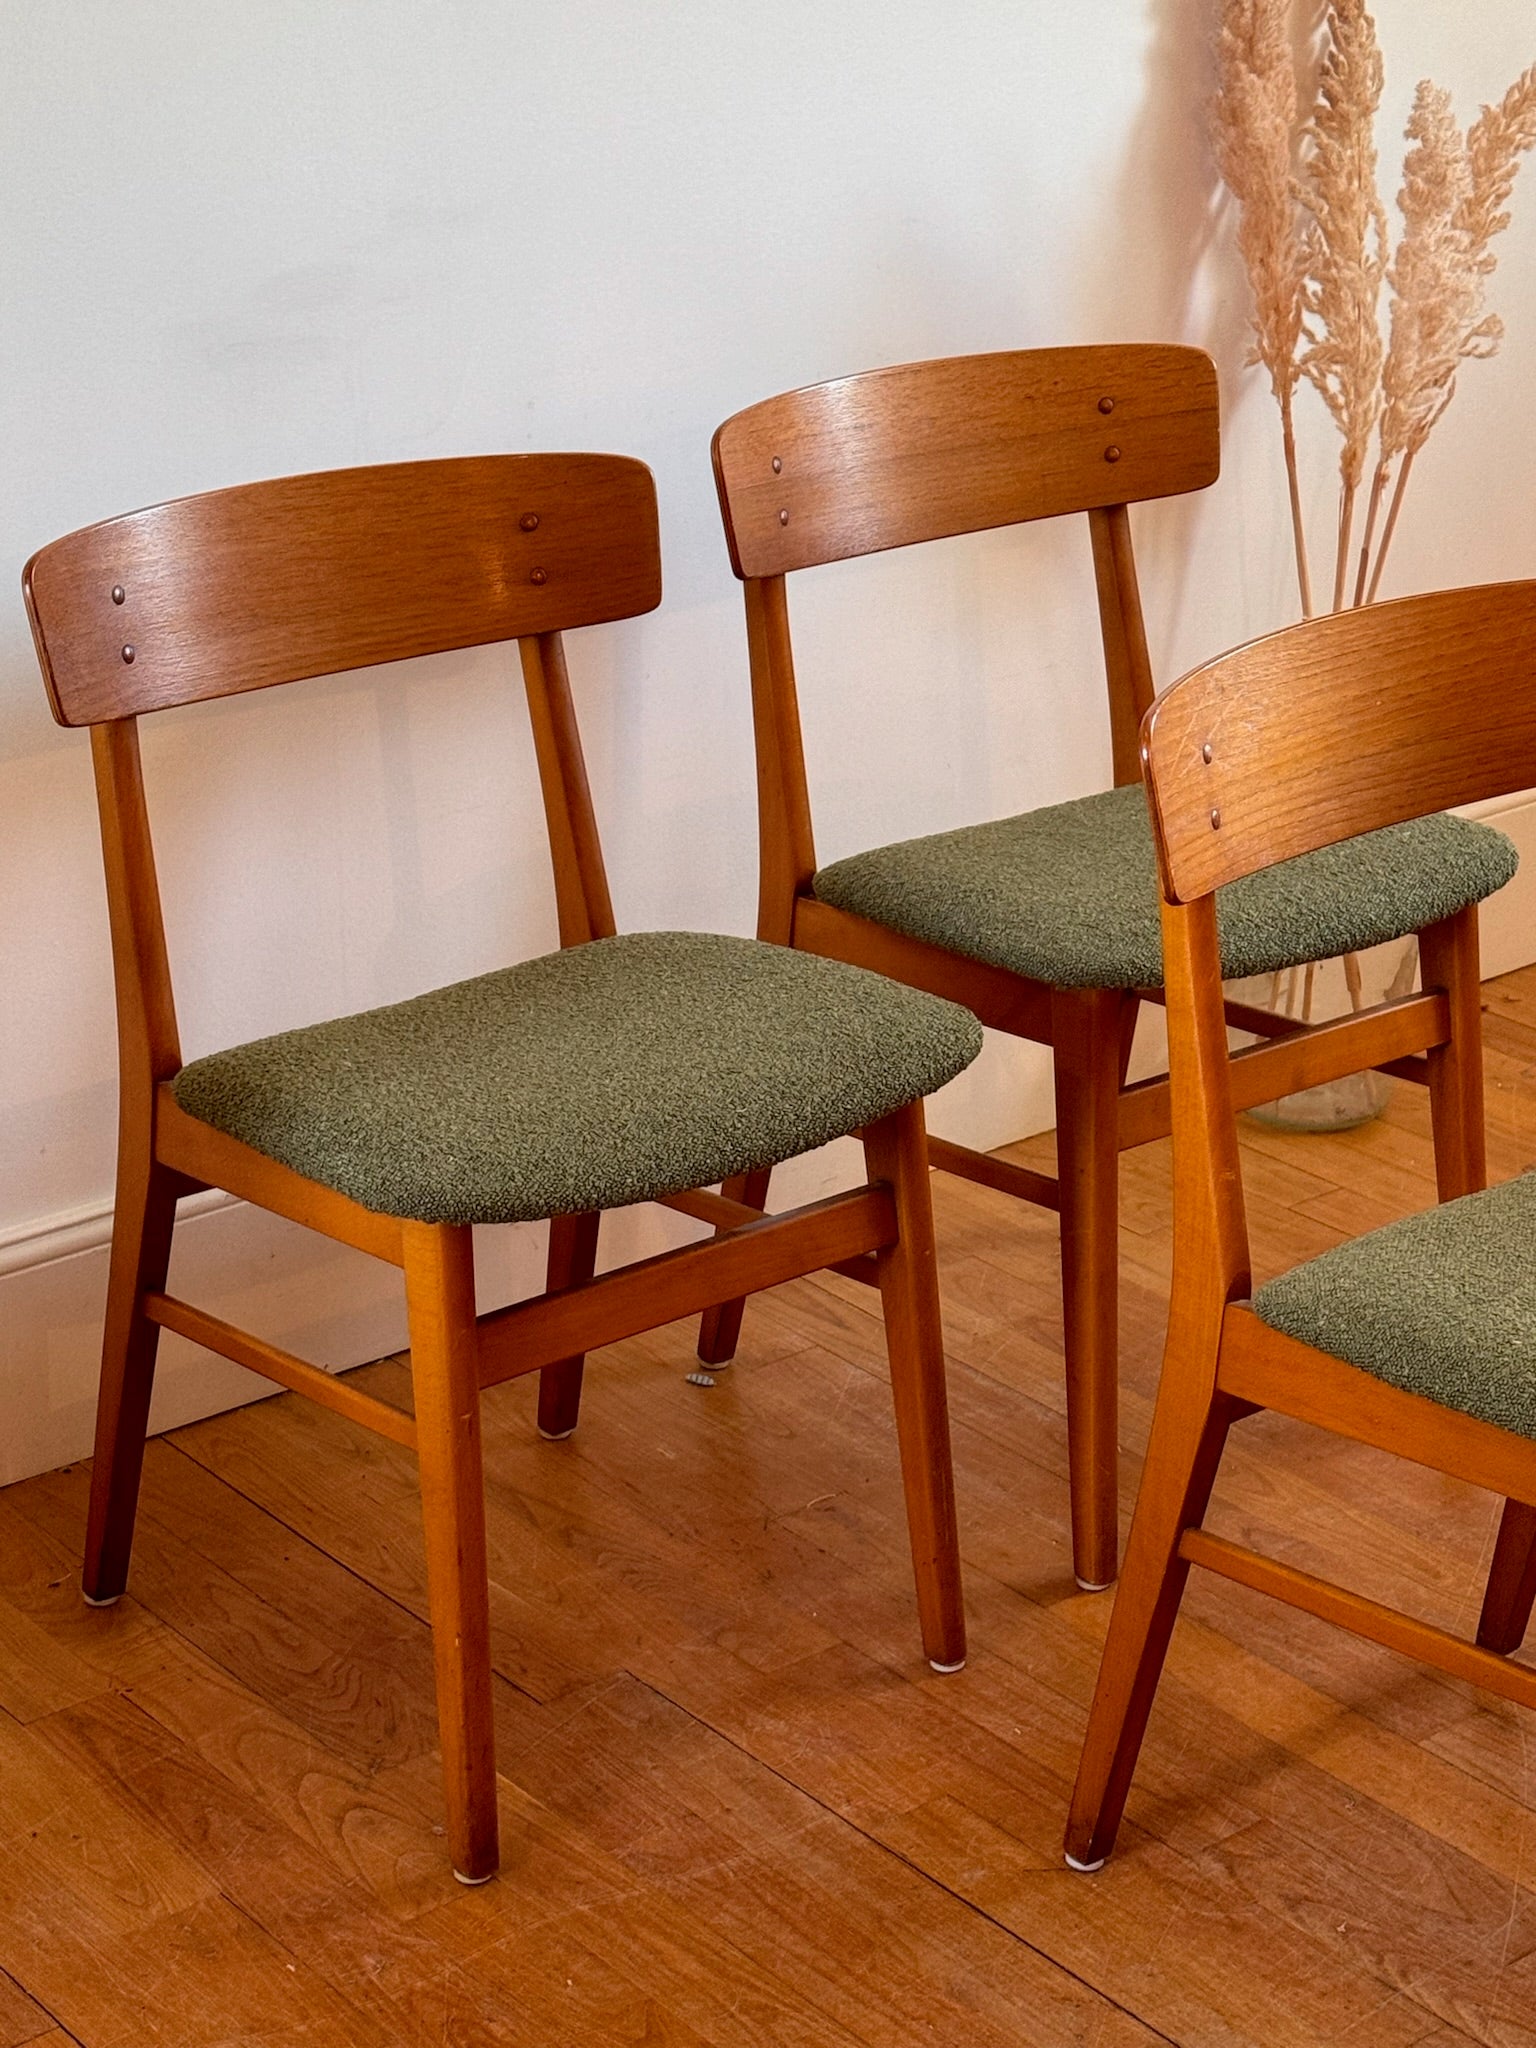 Suite de 4 chaises danoises vintage Liva - Farstrup 211, années 60